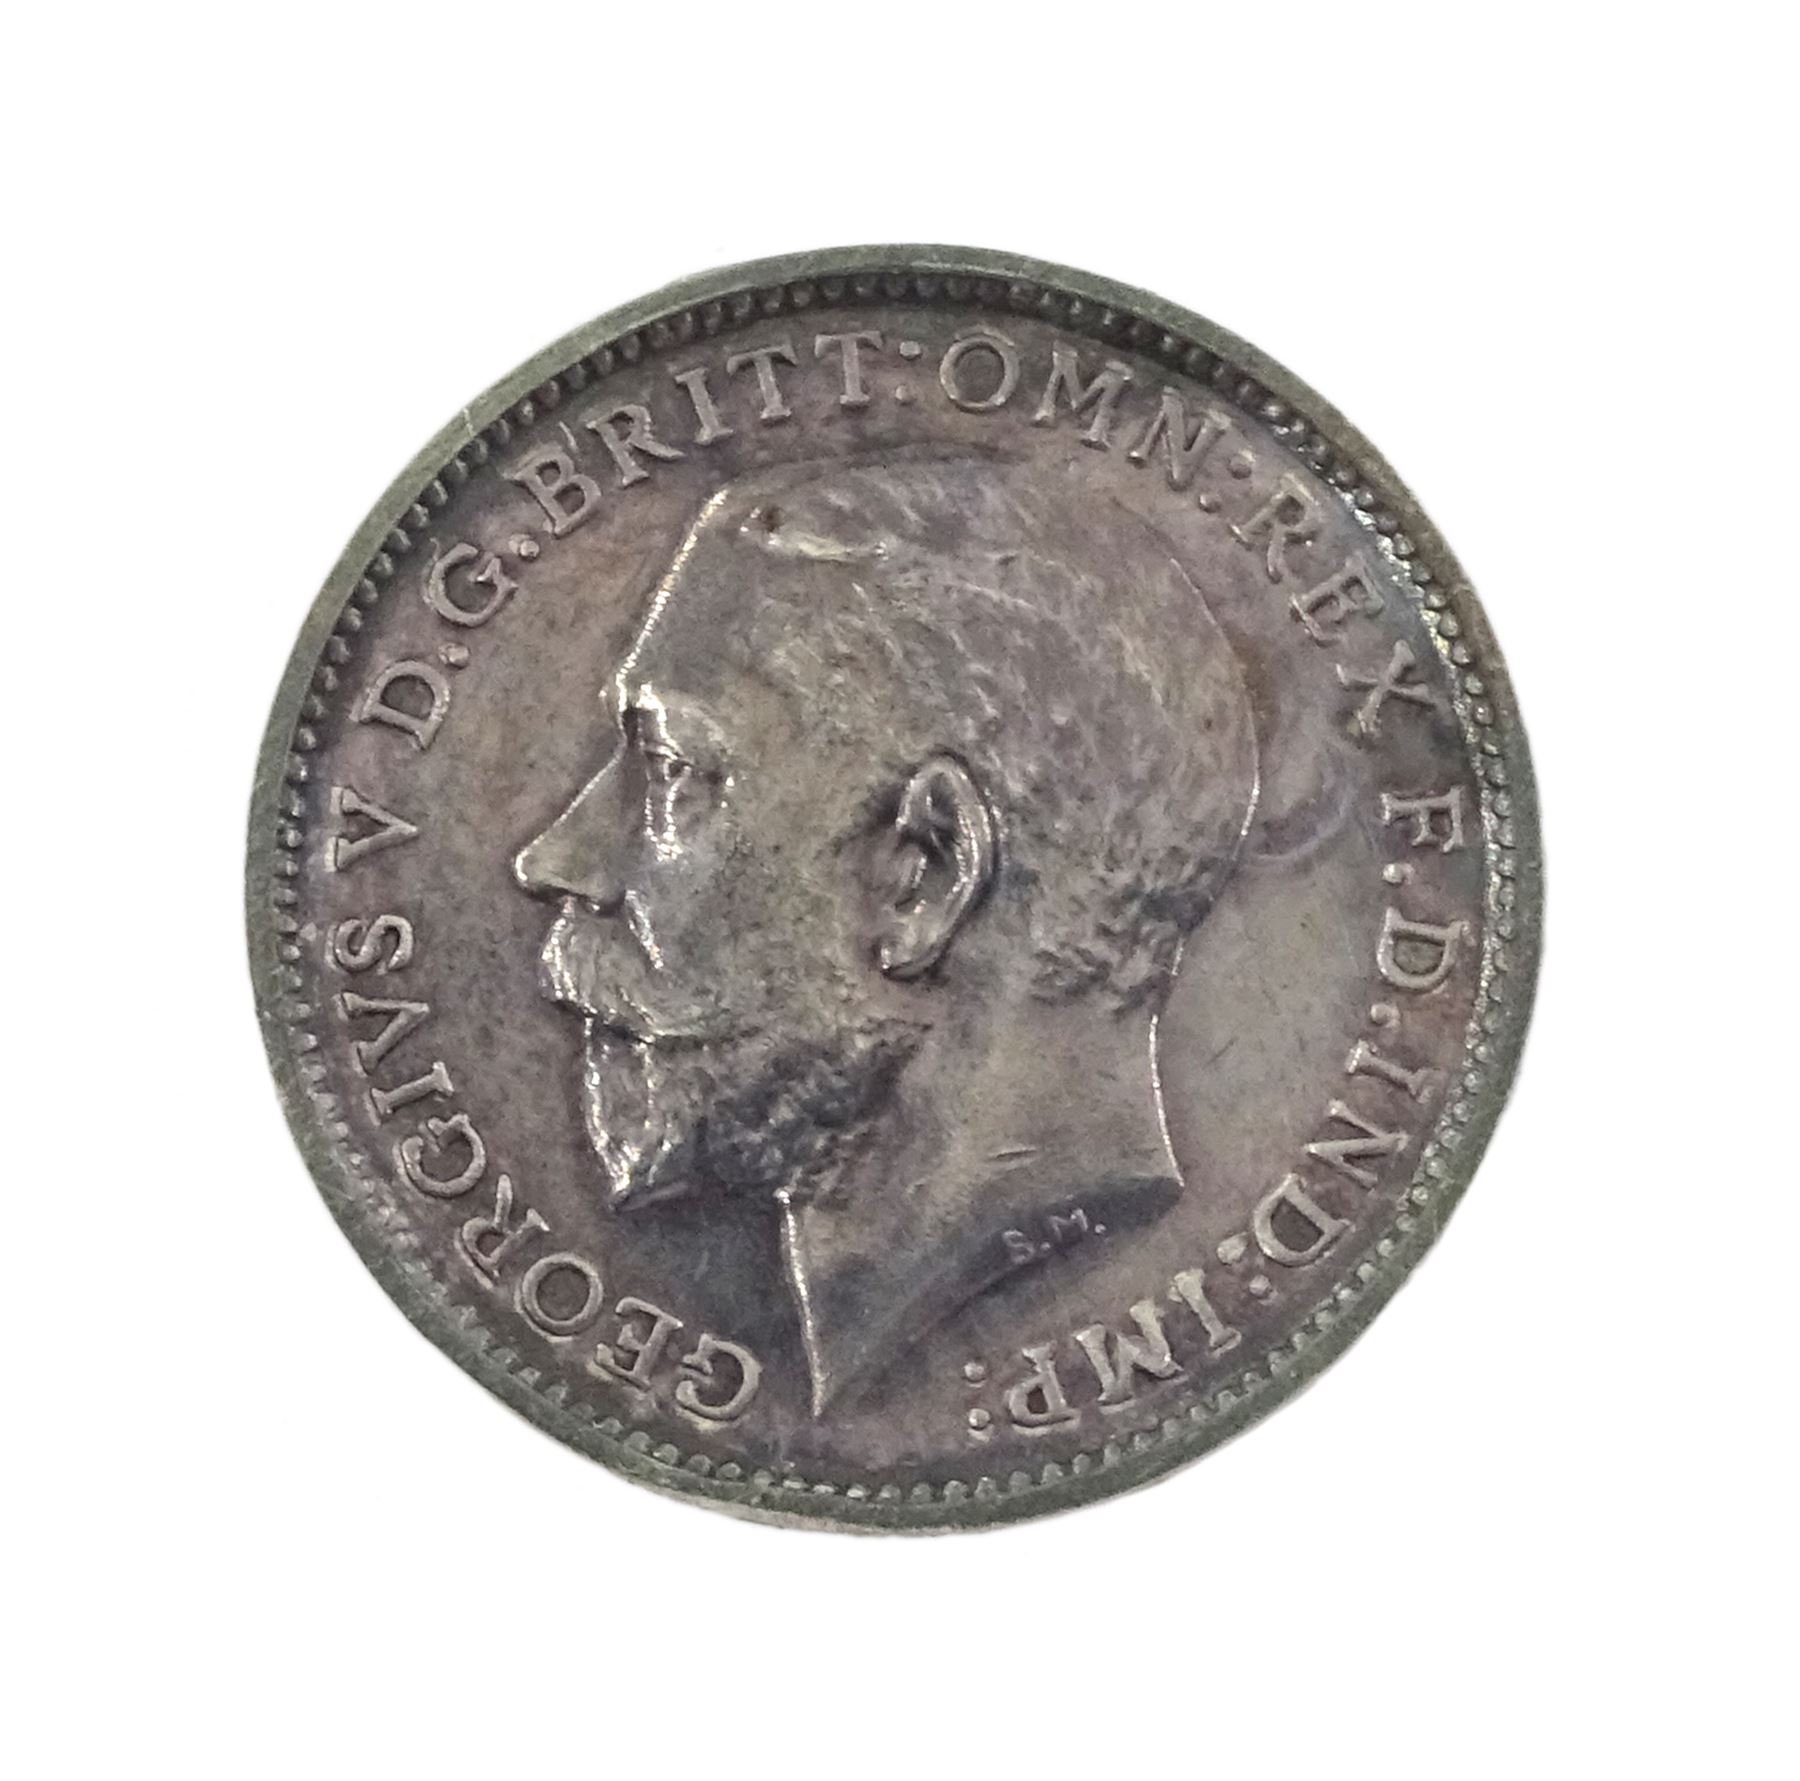 King George V 1911 proof short coin set - Image 18 of 24